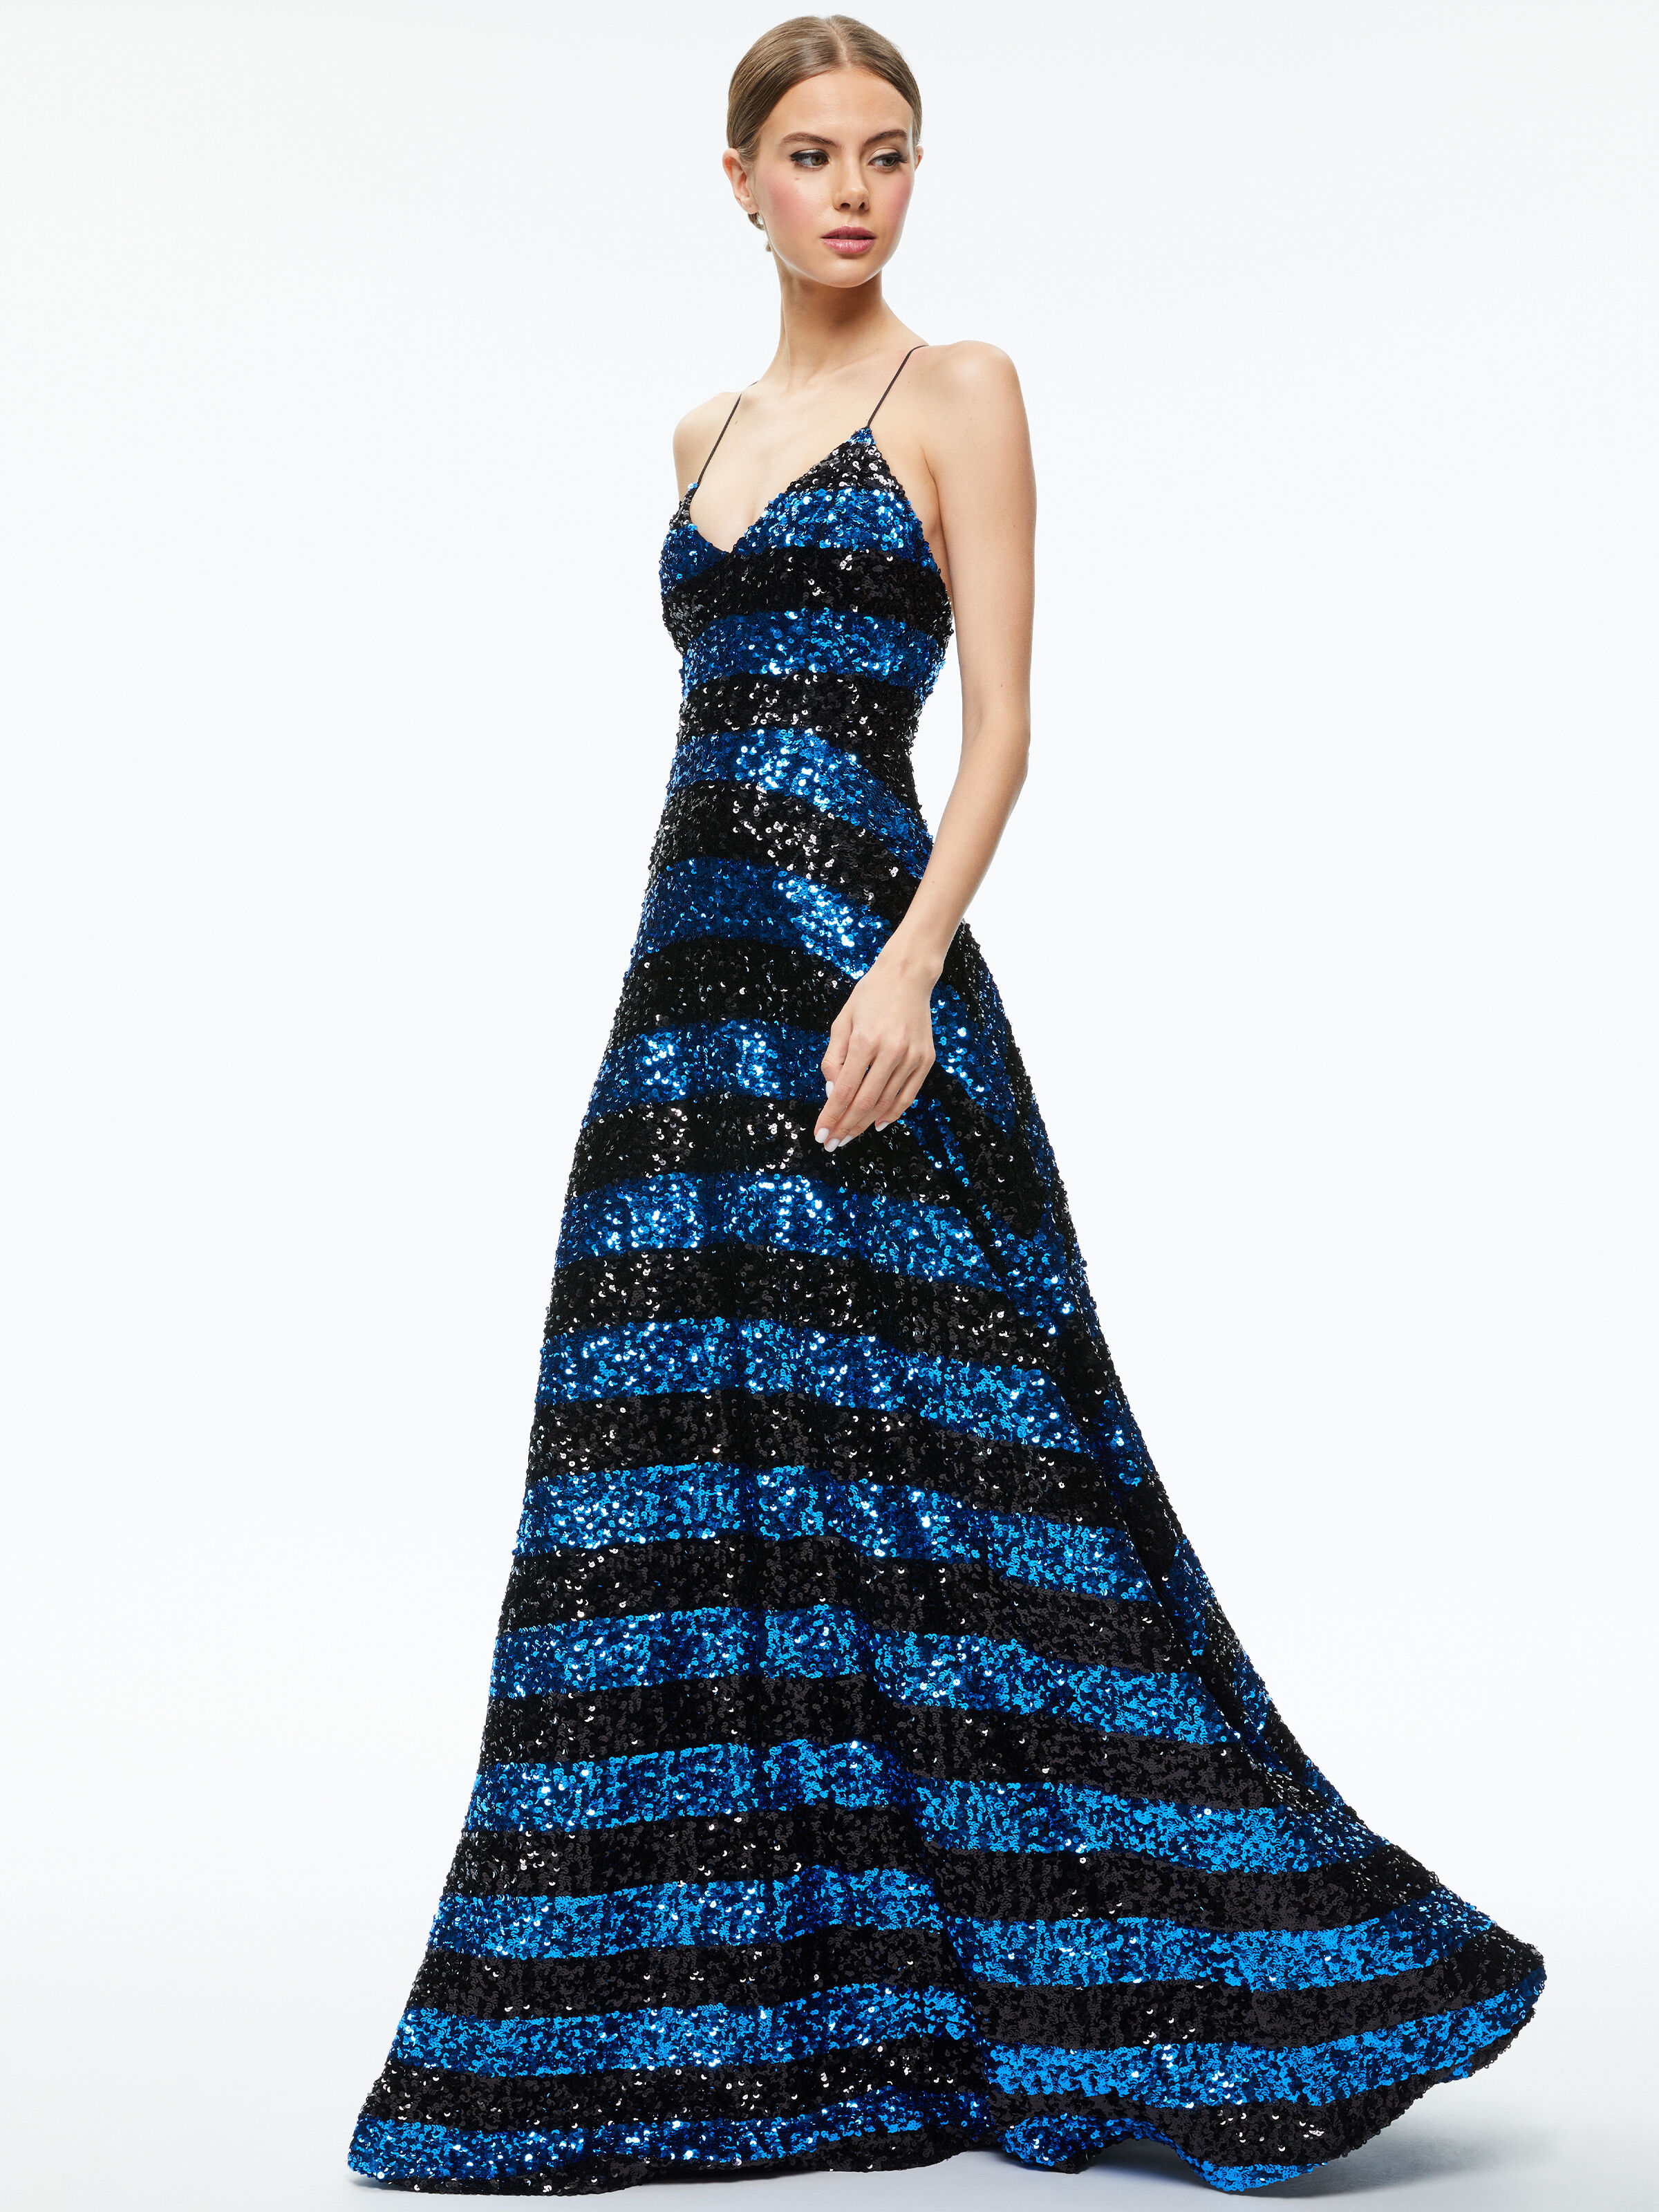 Beaded Light Blue Ball Gown Quince Dress 67331 viniodress – Viniodress